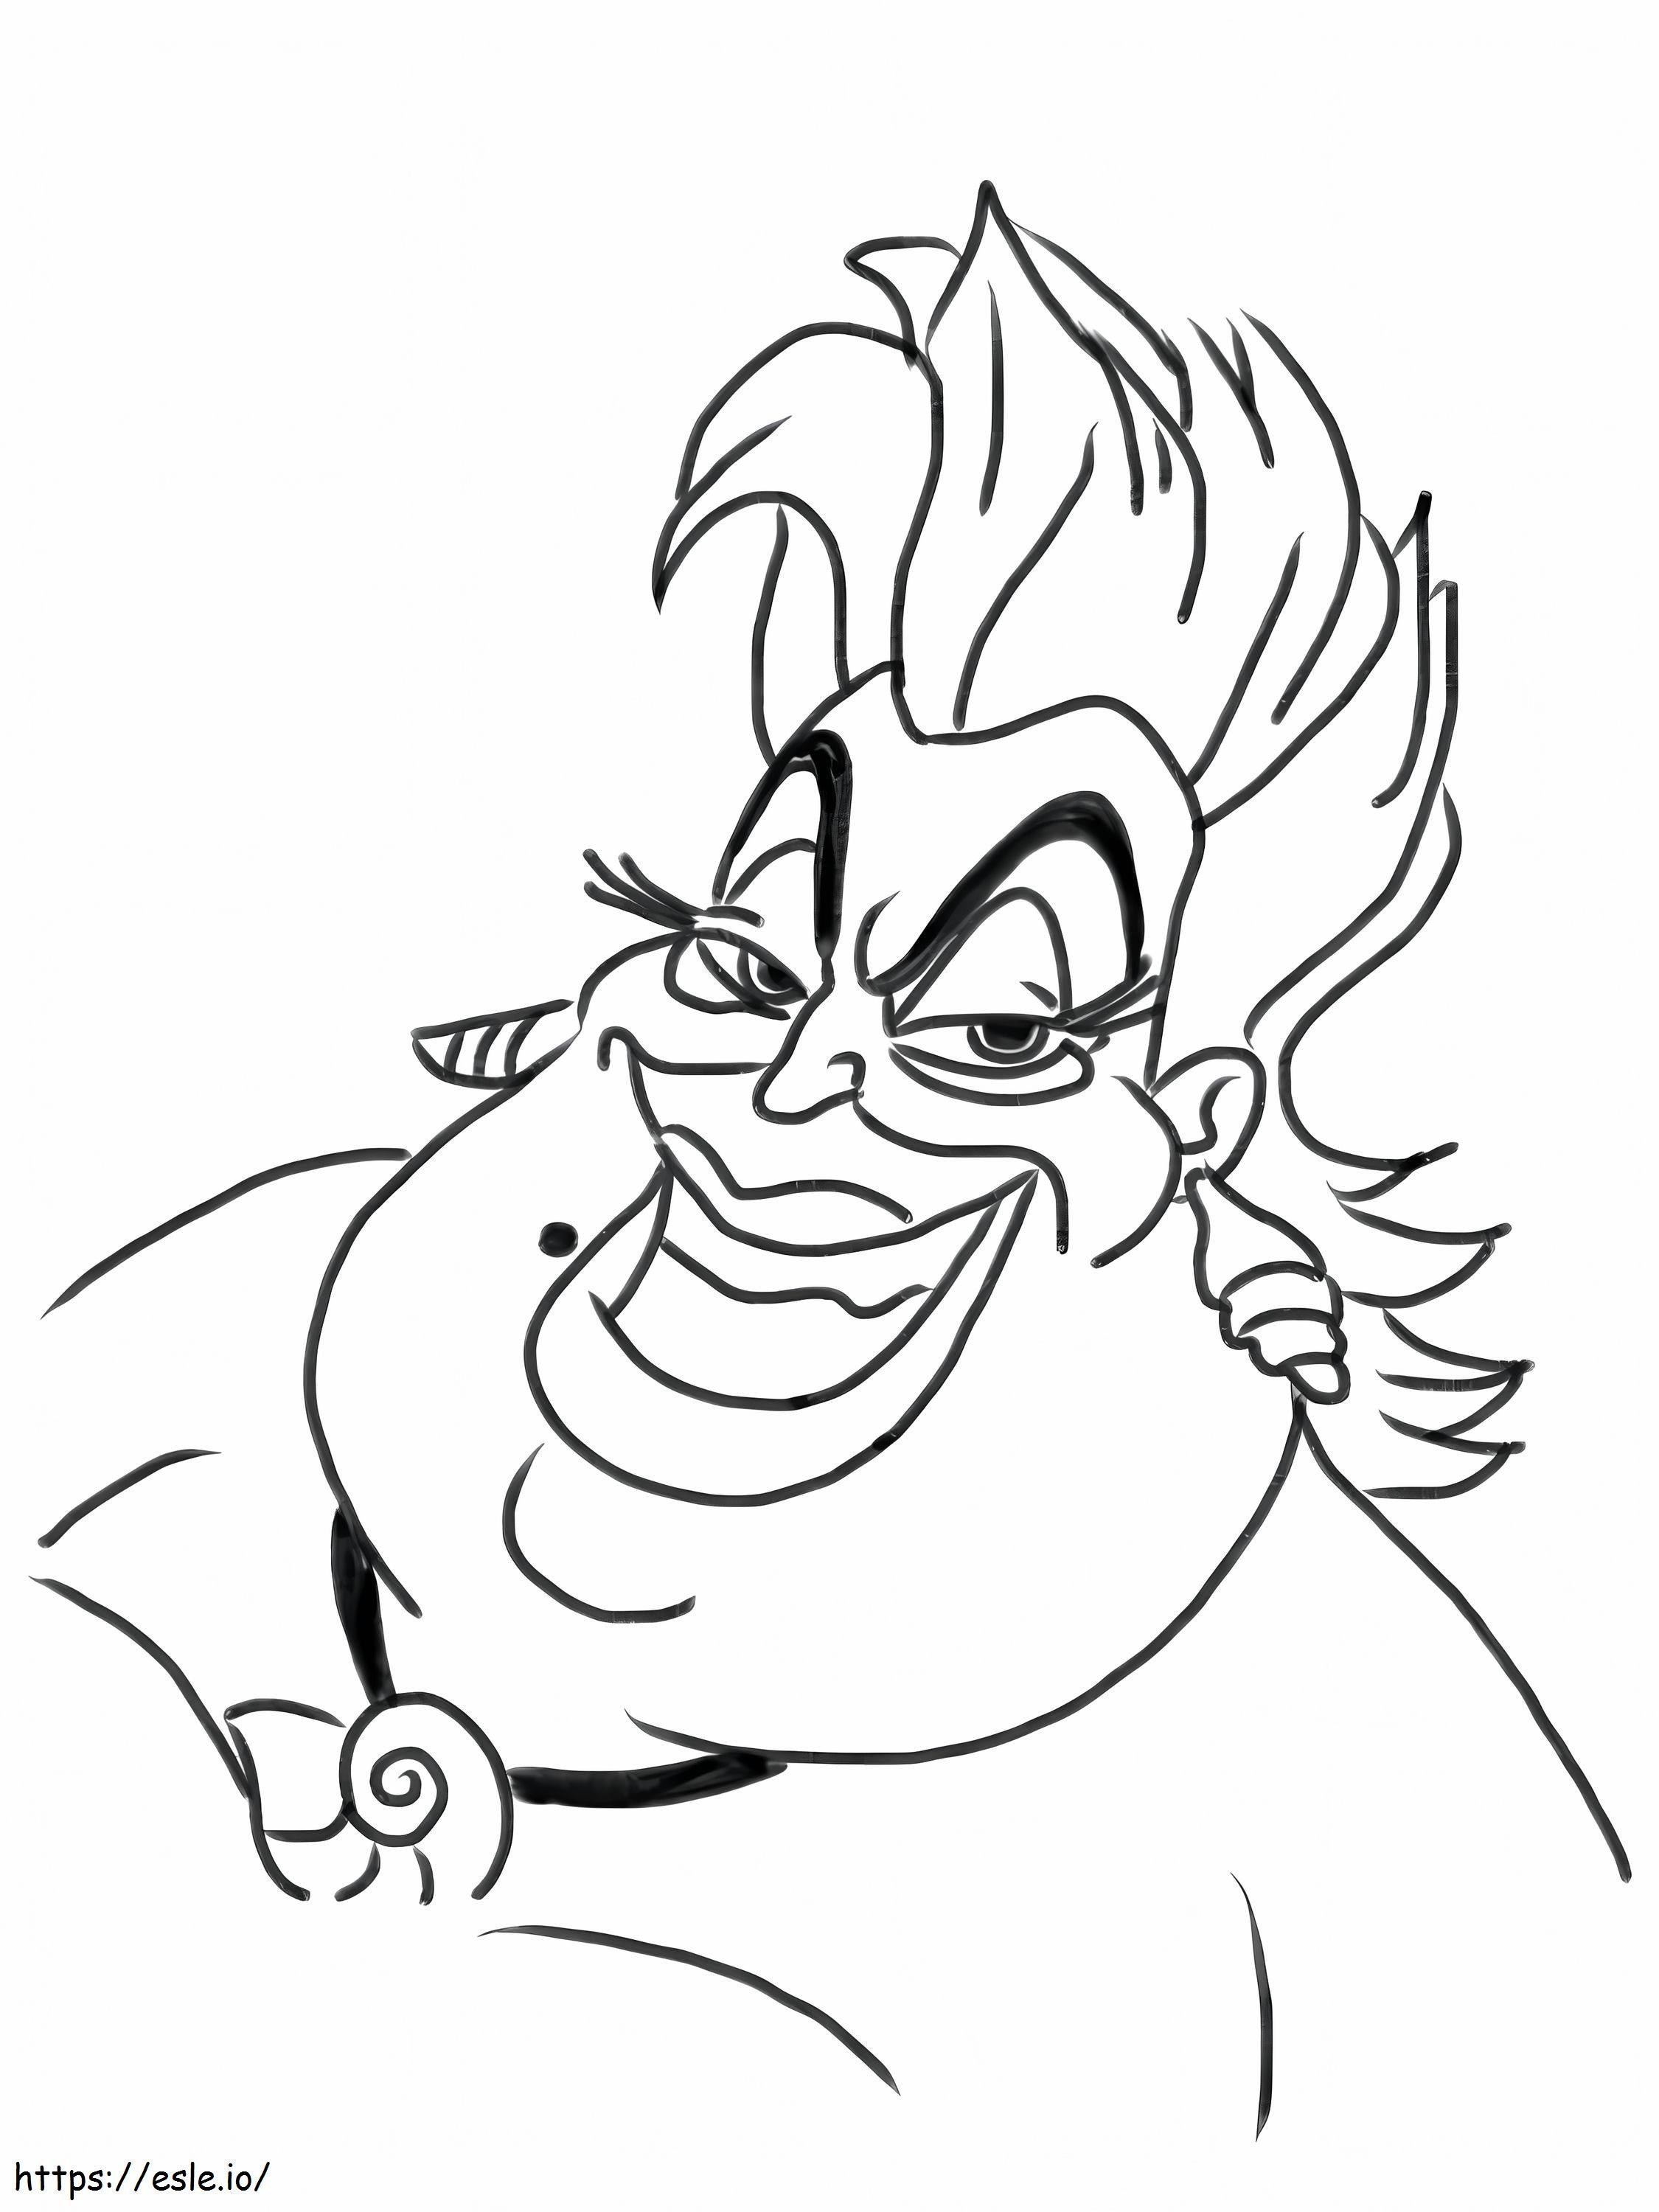 Die böse Ursula lächelt ausmalbilder